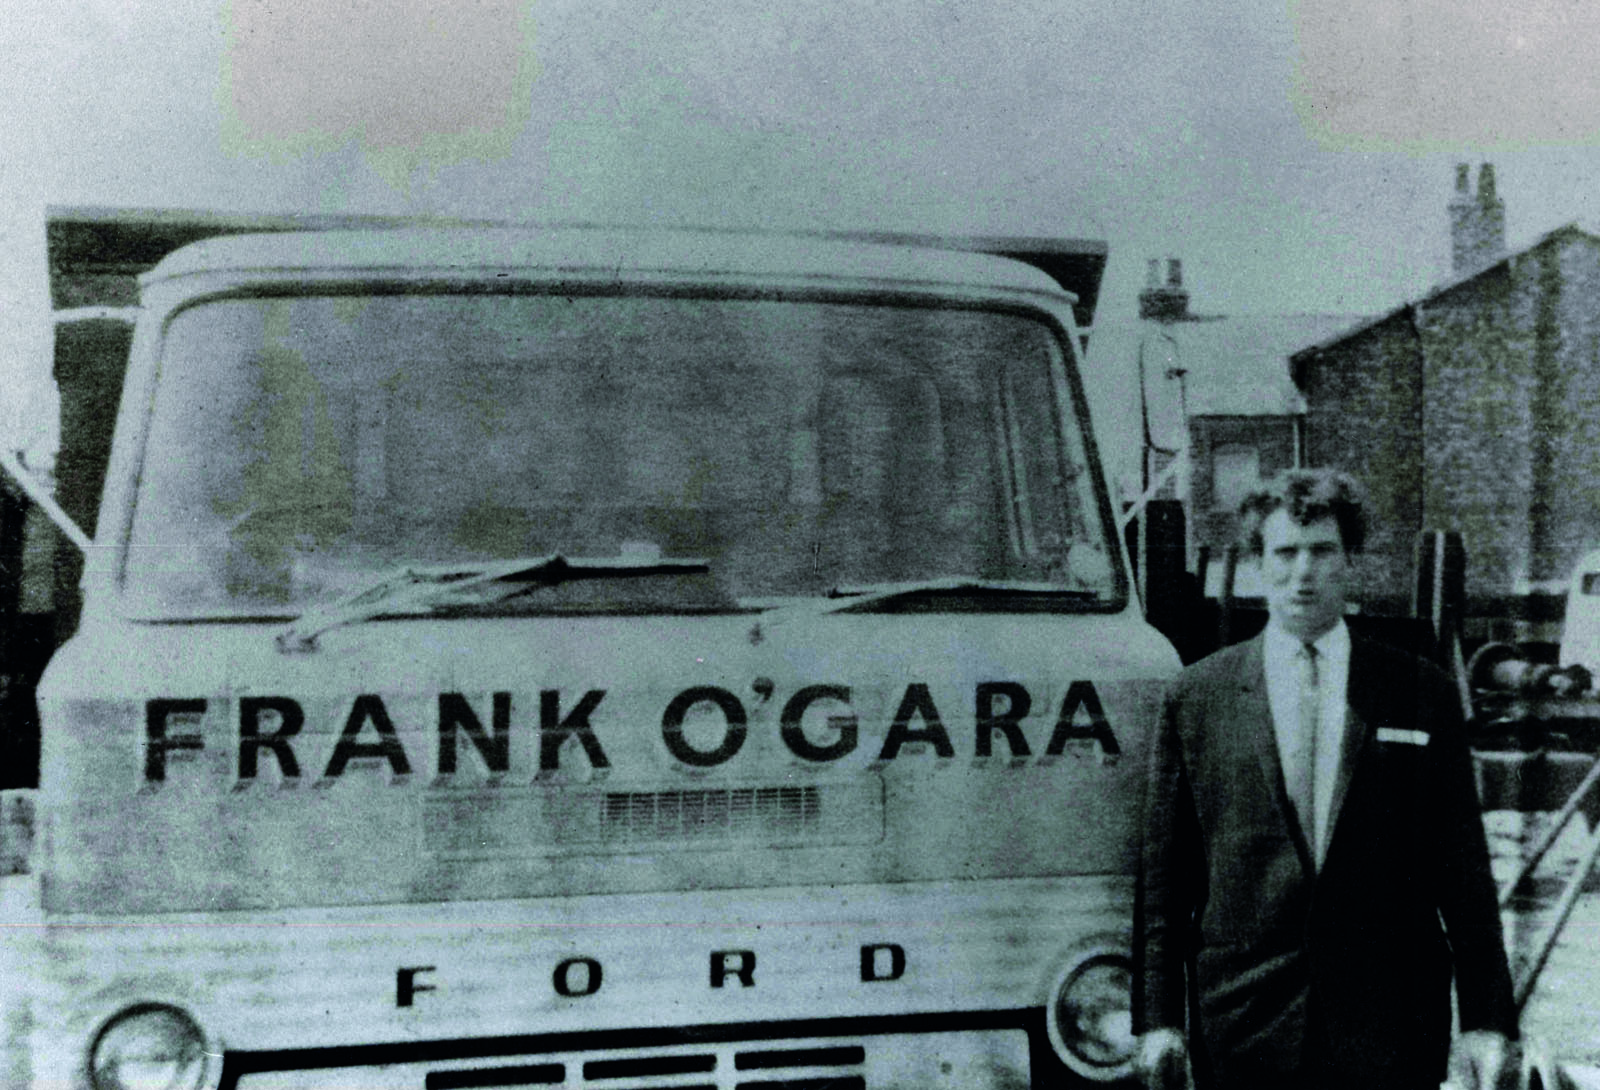 Frank O'Gara in 1967